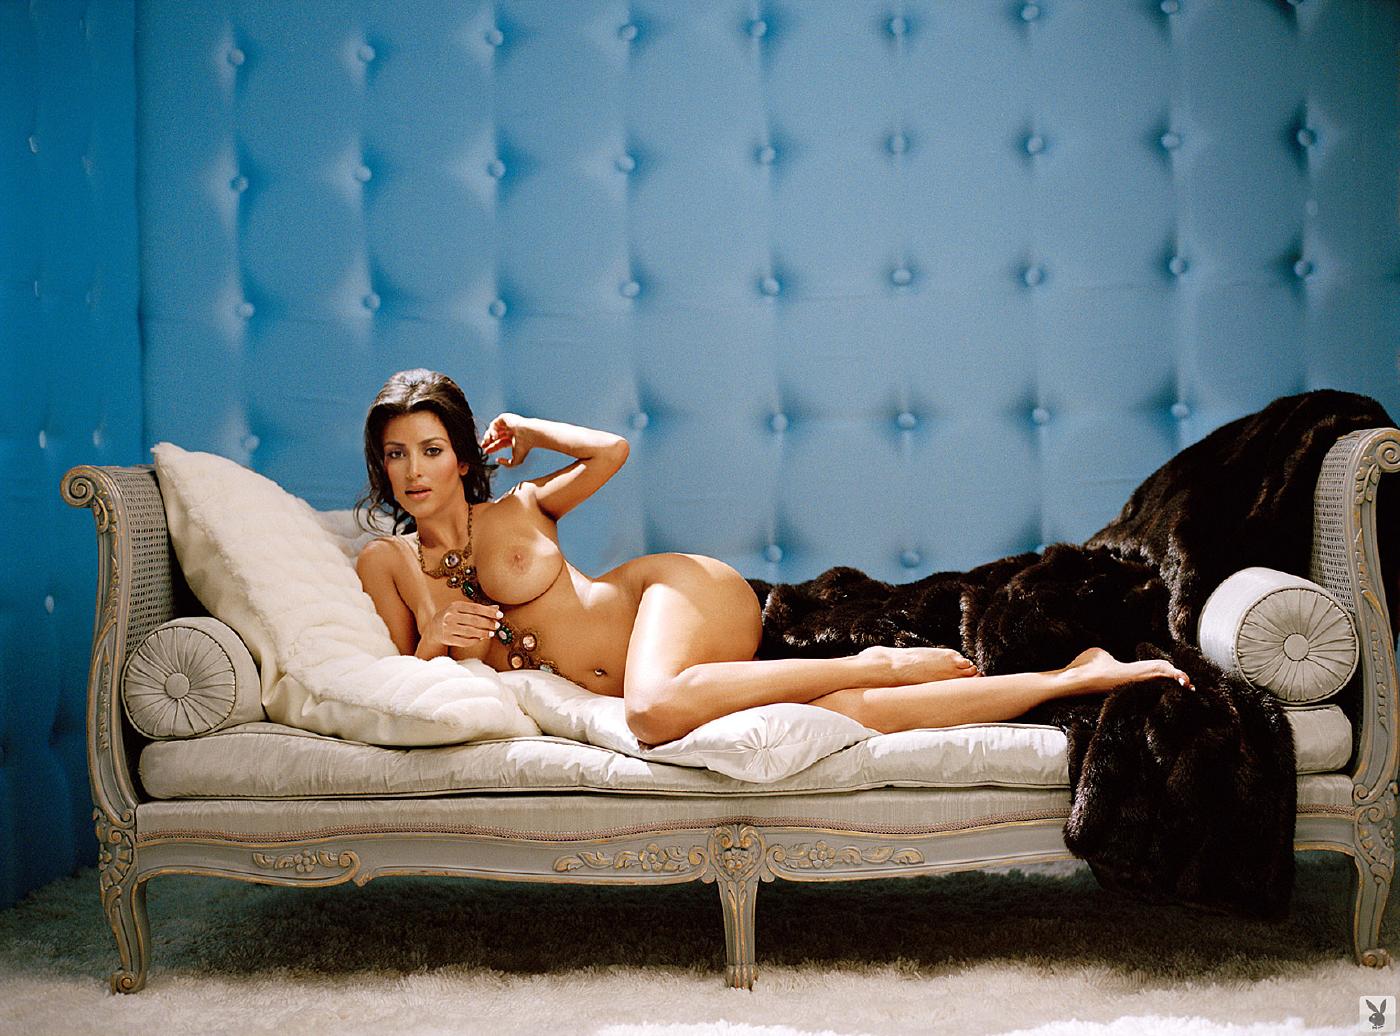 Kim Kardashian Nude Playboy Playmodels Photoshoot Leaked 32